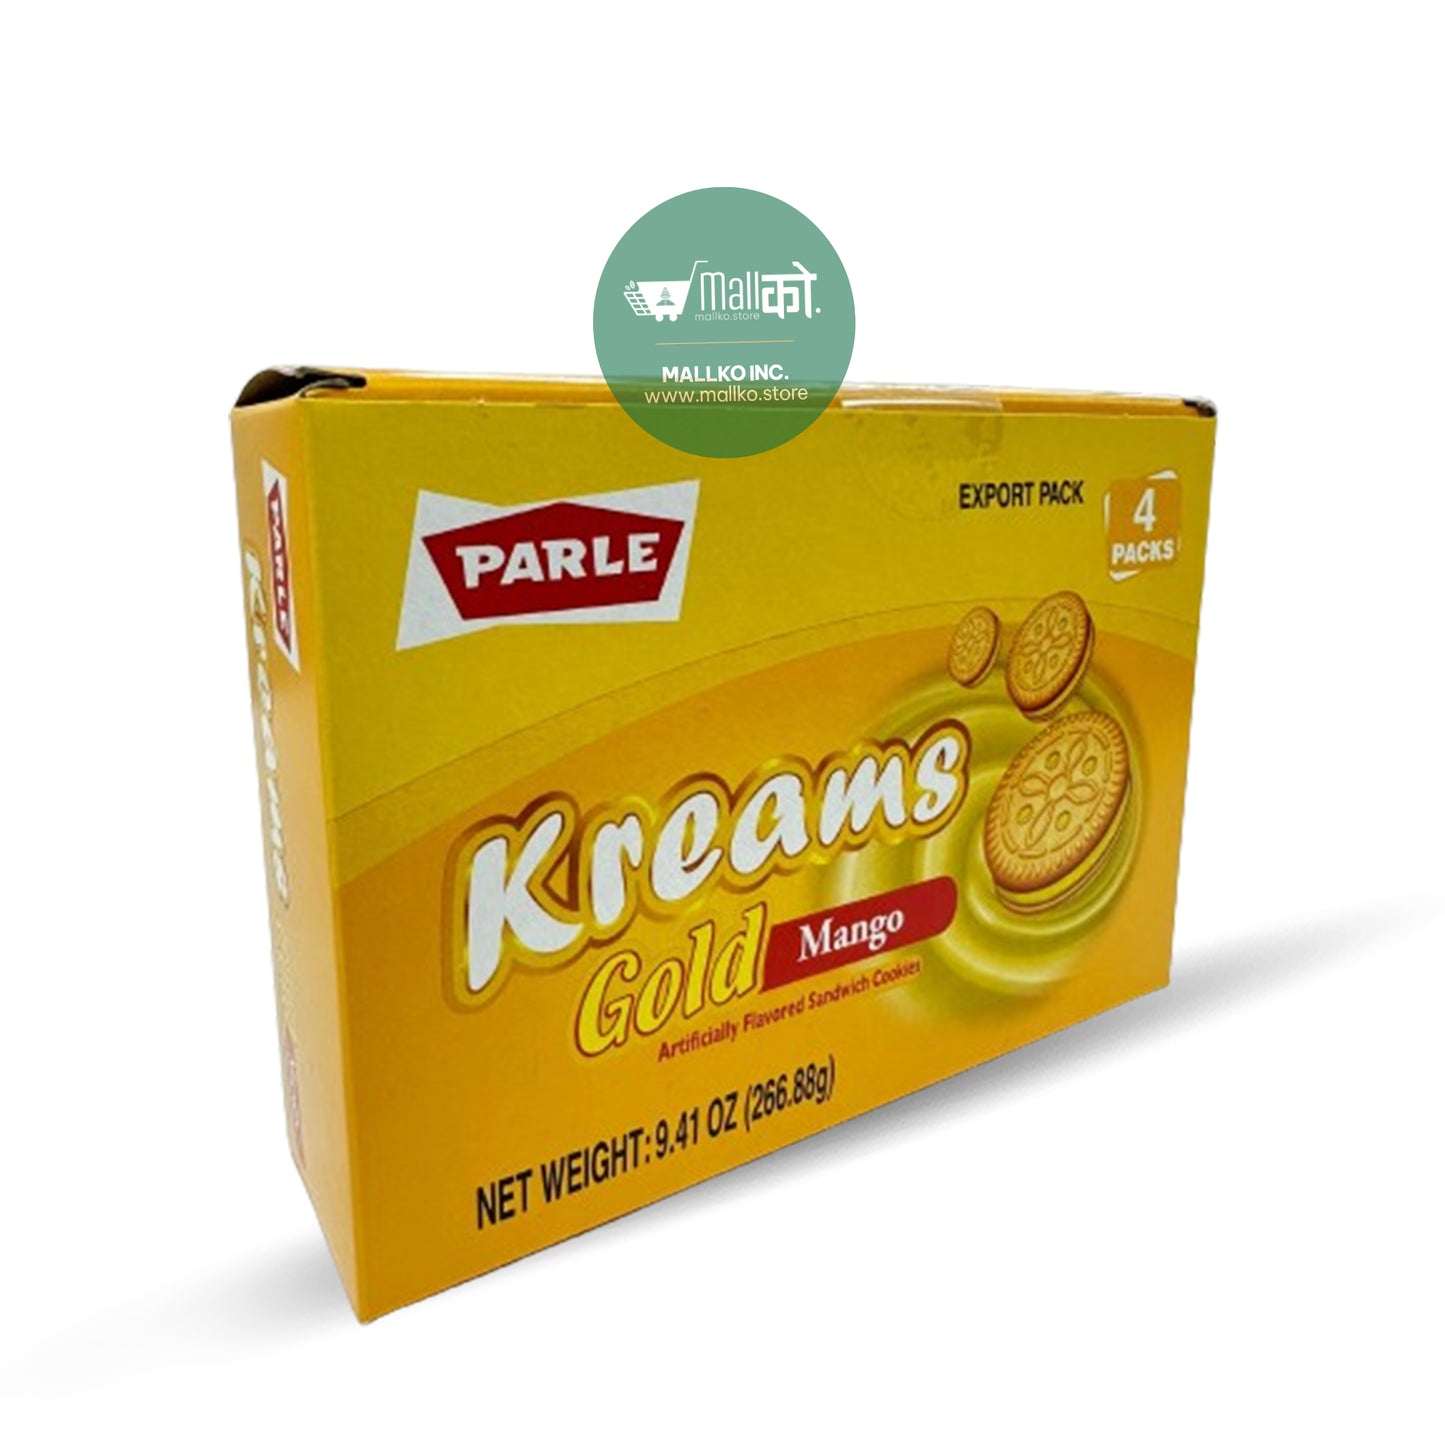 Parle Kreams Gold Mango Cookies - 266.88g